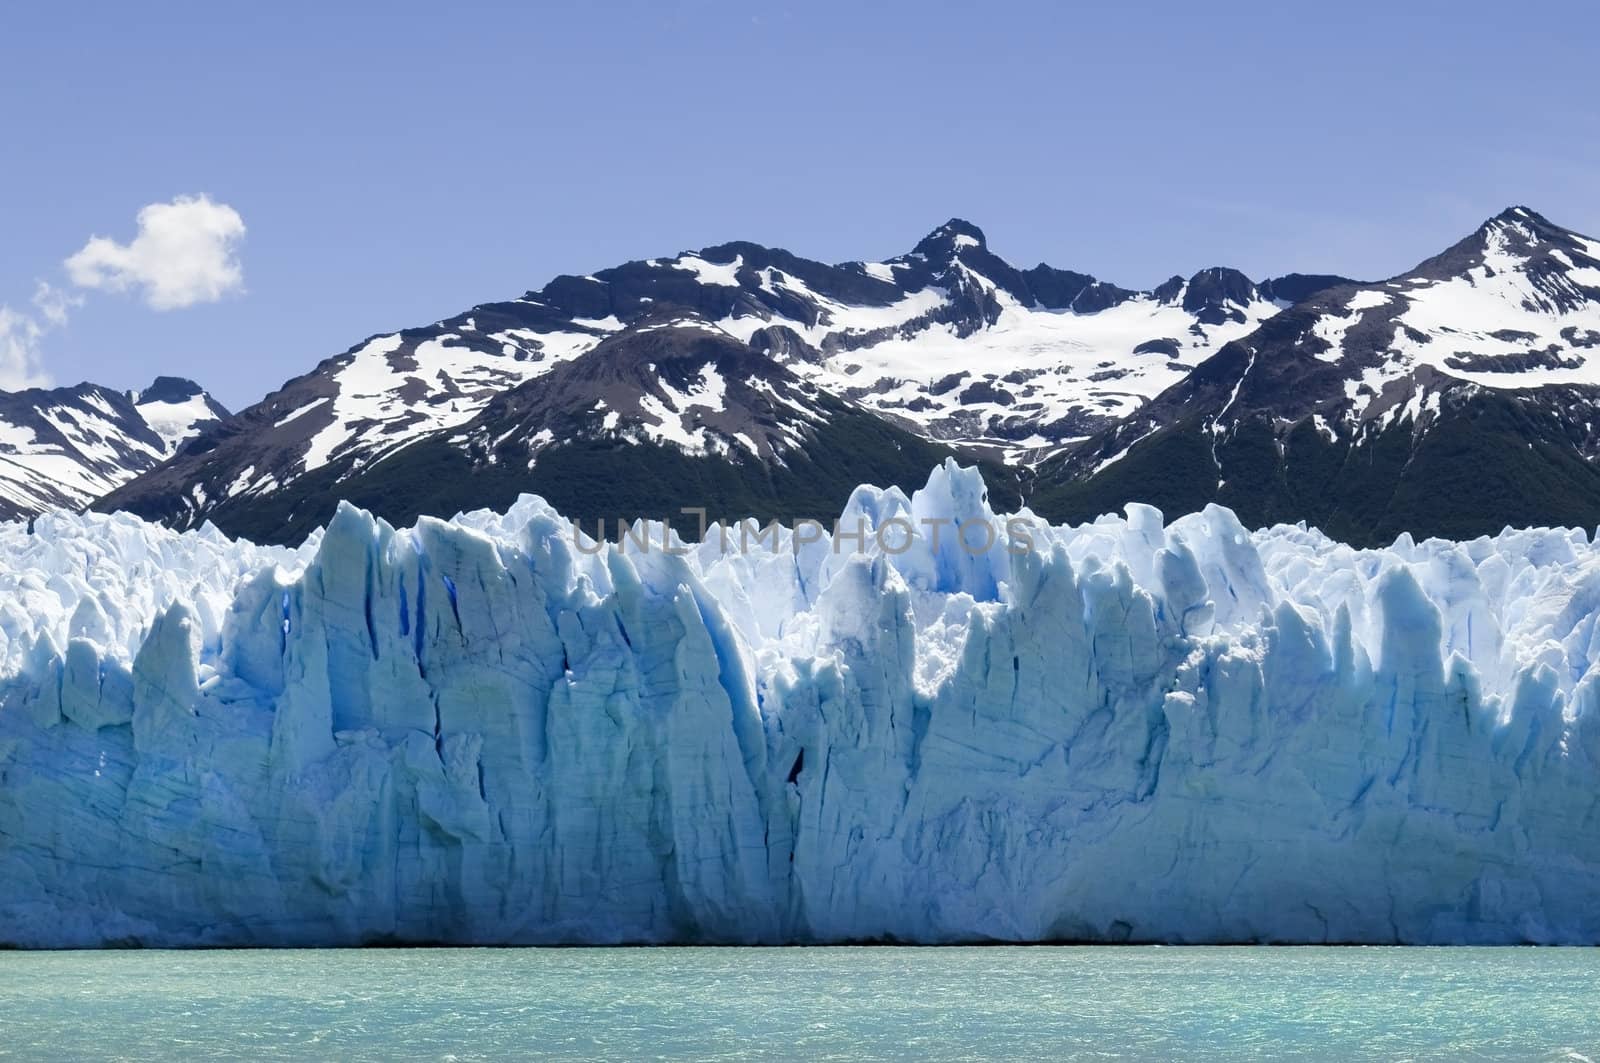 Perito Moreno Glacier in Argentina by irisphoto4